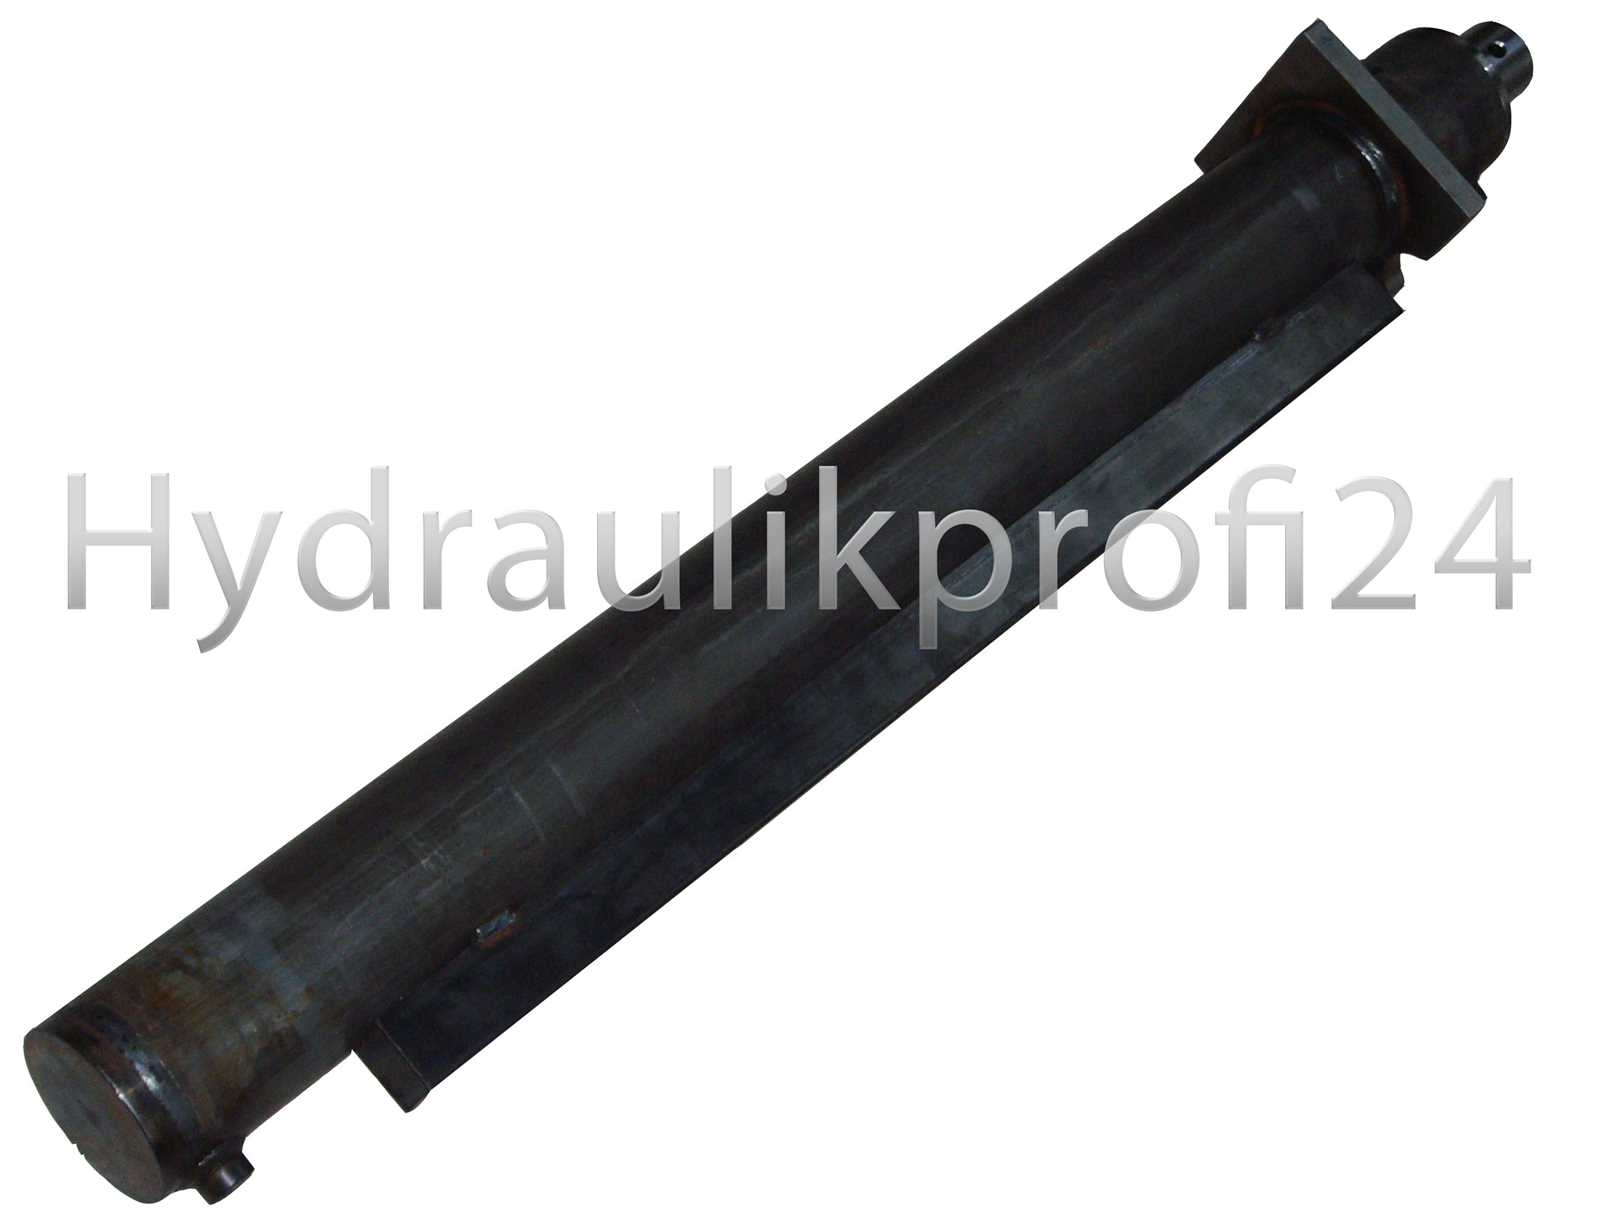 Hydraulikprofi24 - Hydraulikzylinder Holzspalterzylinder 80-120-1500 ohne  Befestigung mit Flansch